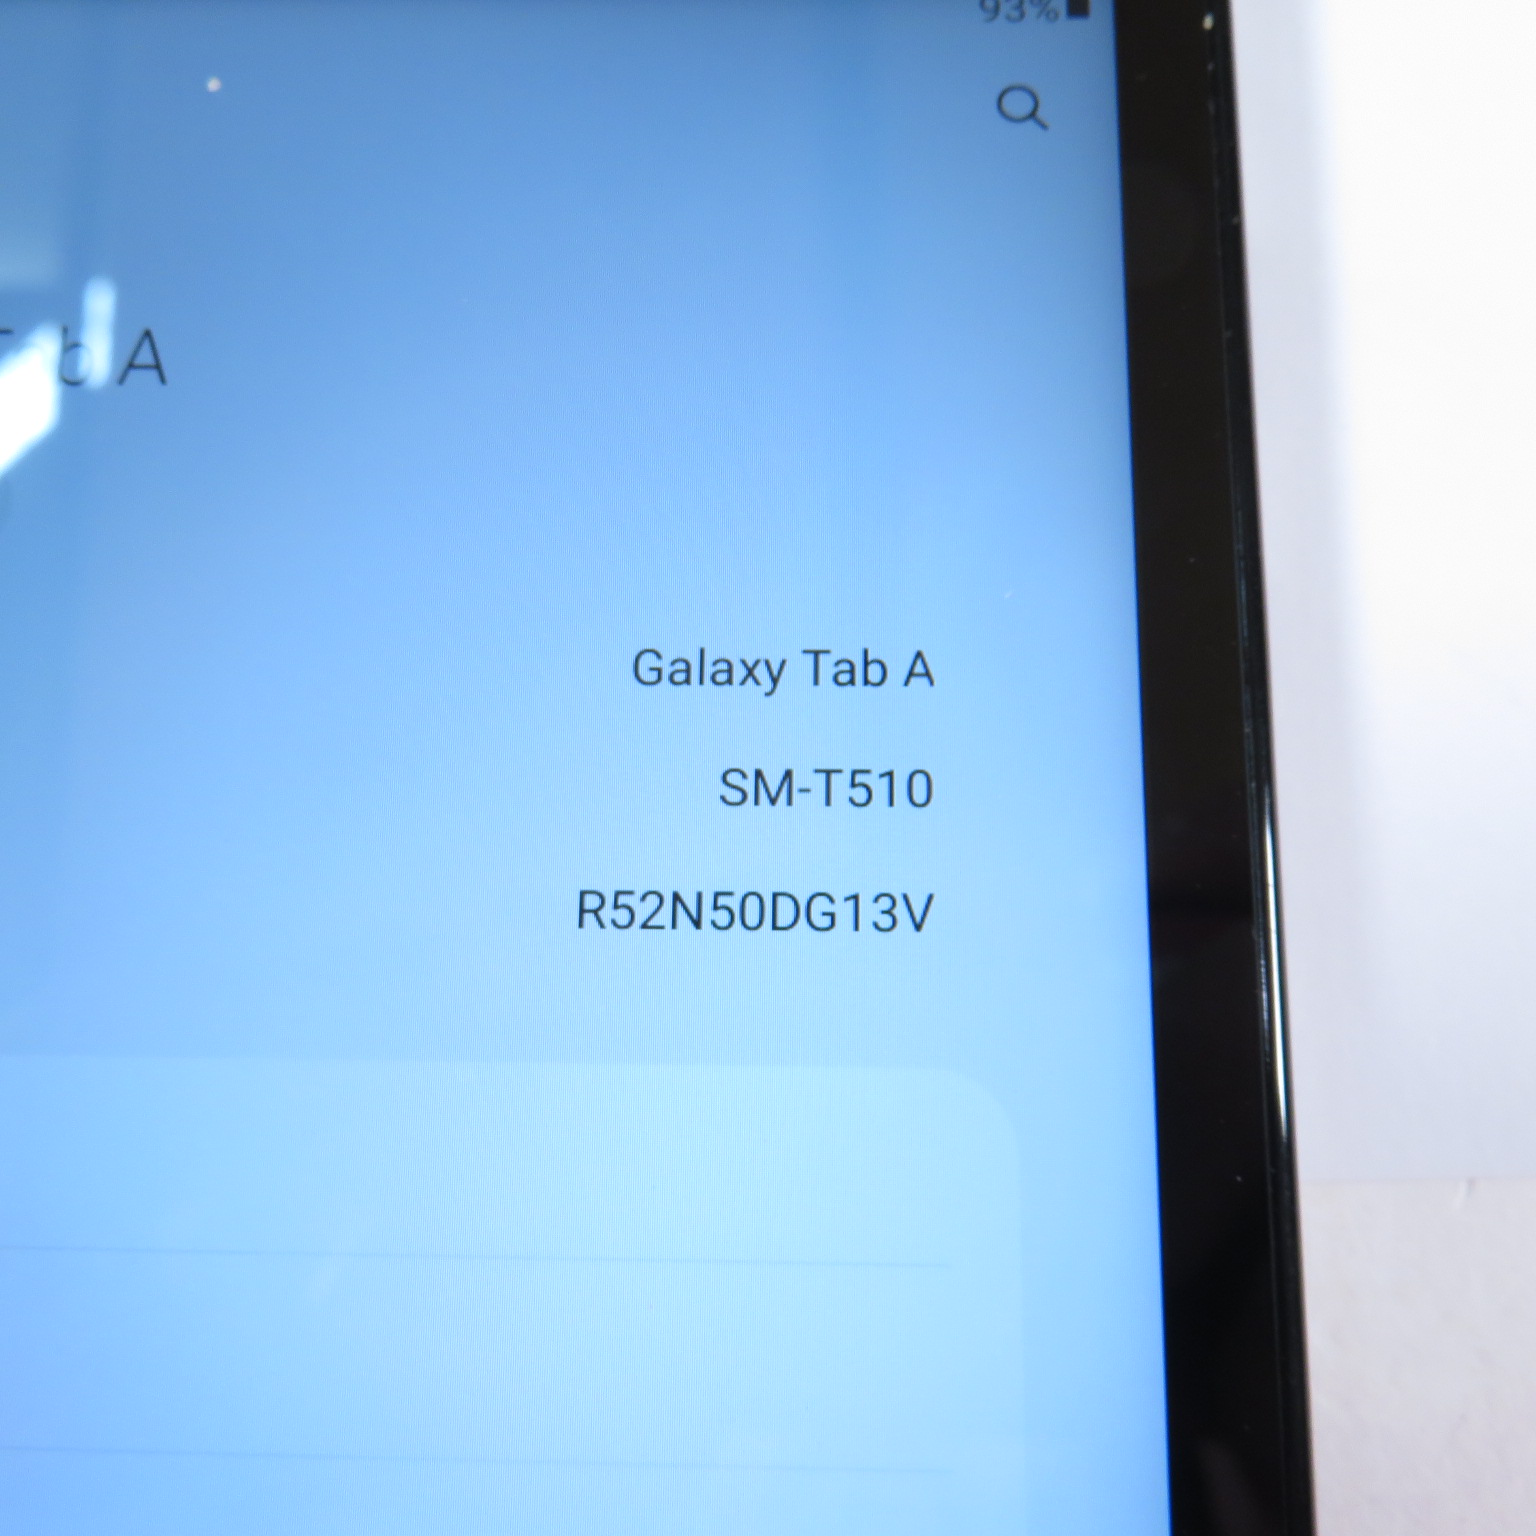 Samsung Galaxy Tab A SM-T510 (2019, Wi-Fi) 32GB Storage 10.1